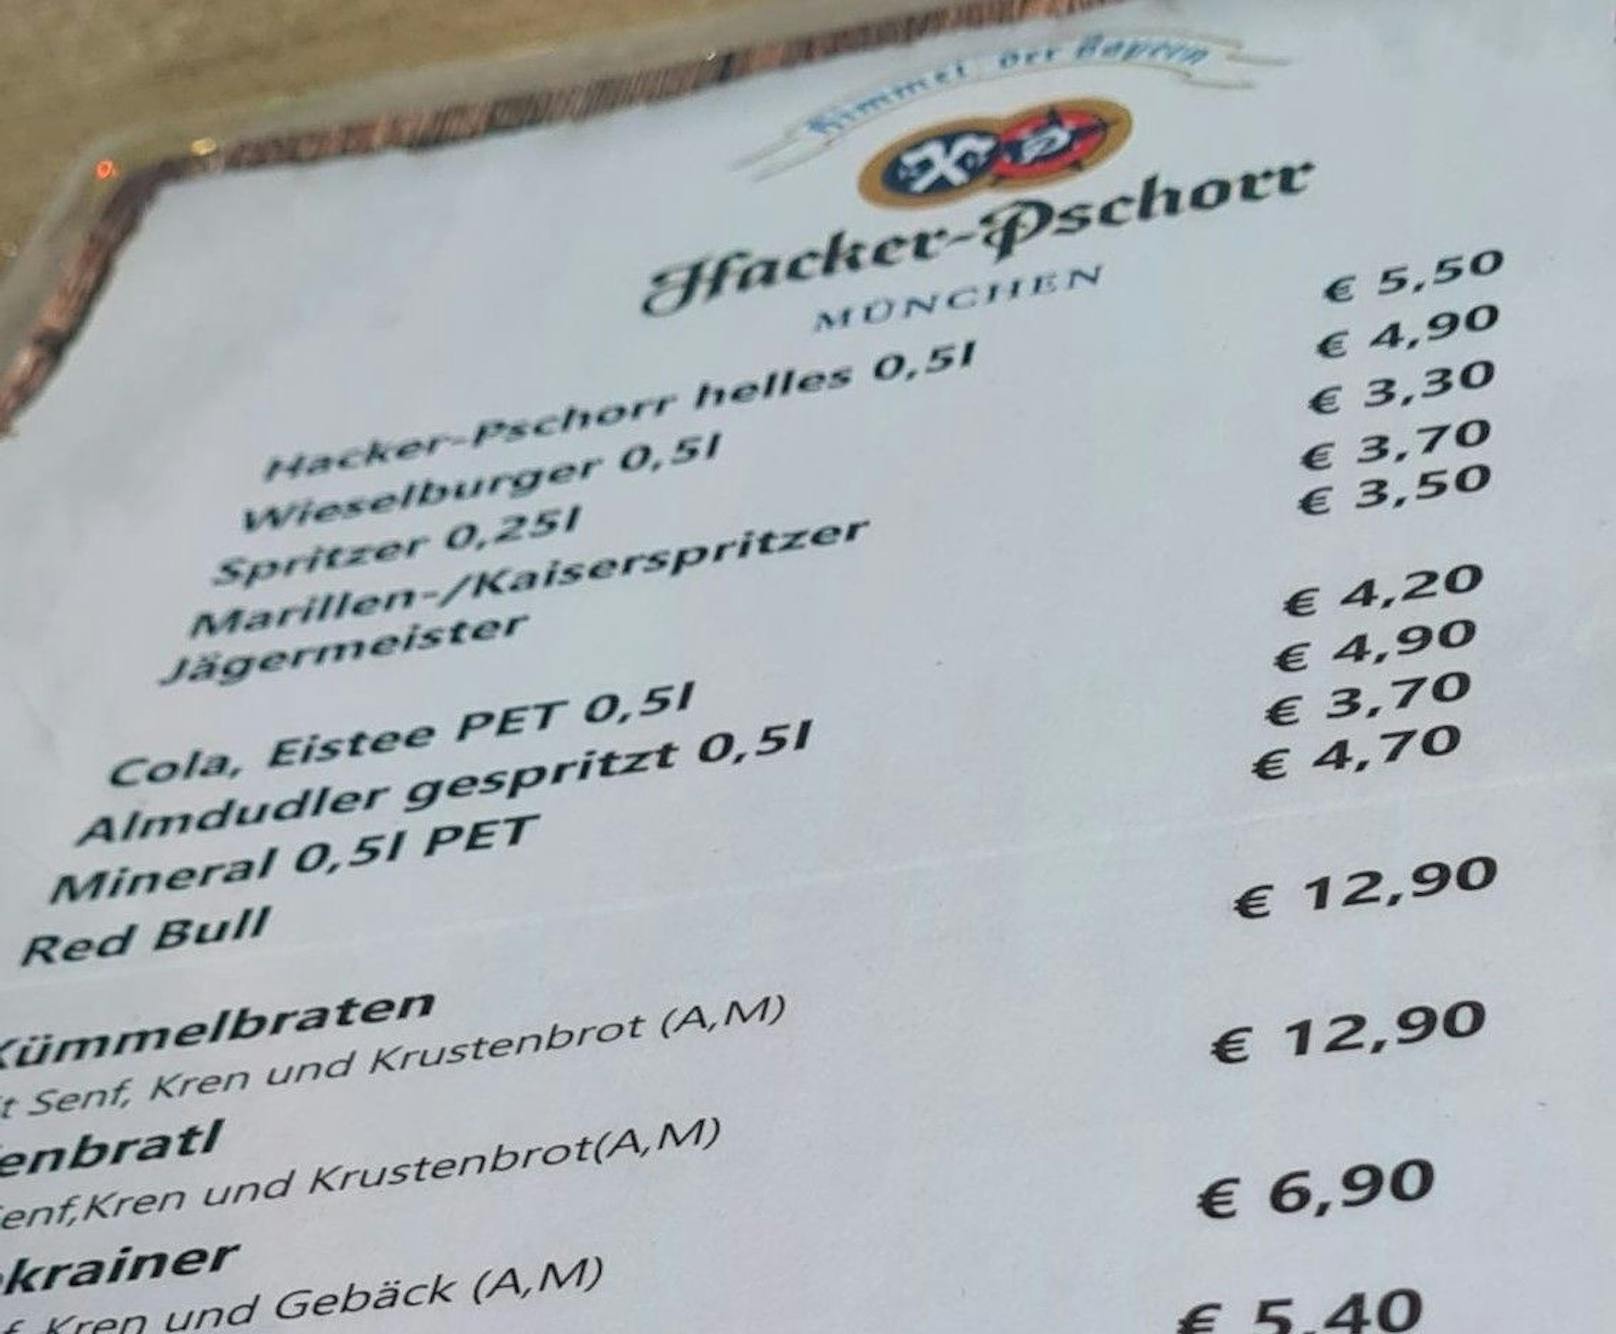 5, 50 Euro für halben Liter Bier.